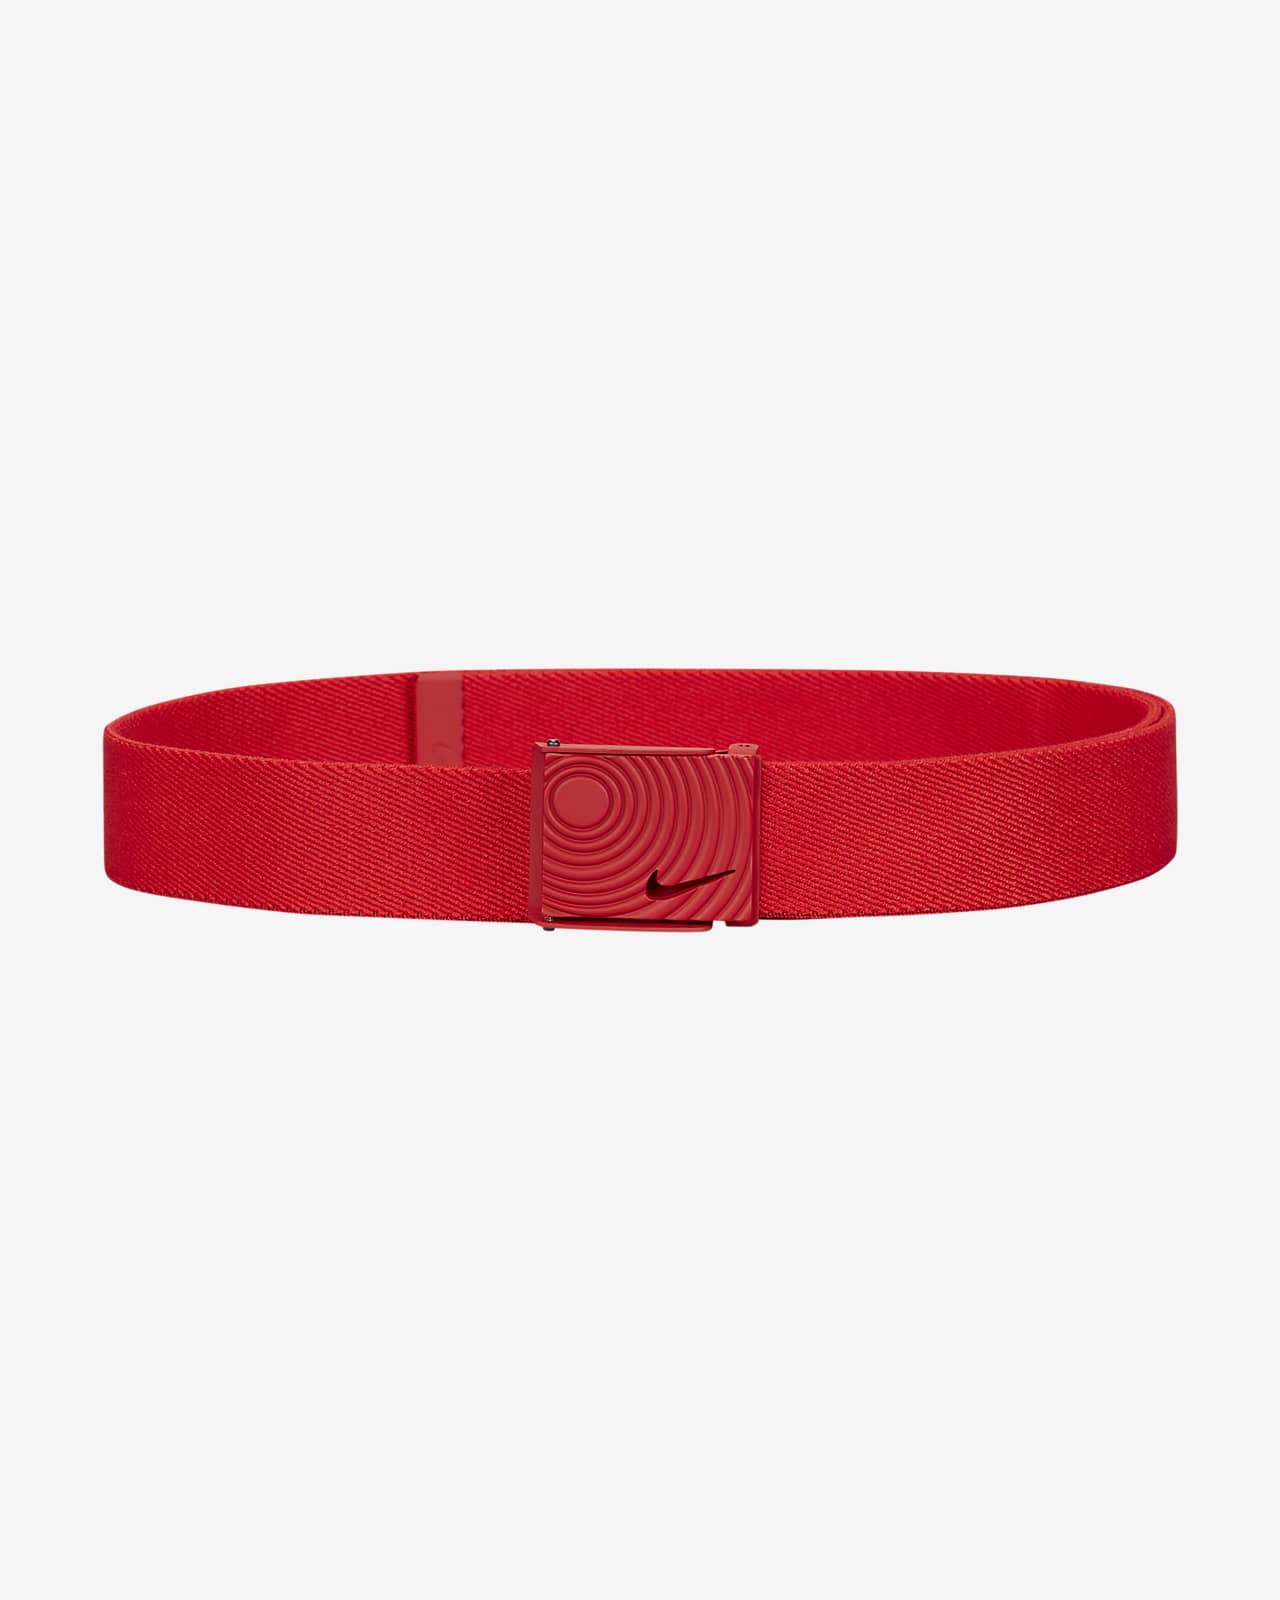 Cinturón de red elástica Nike Outsole